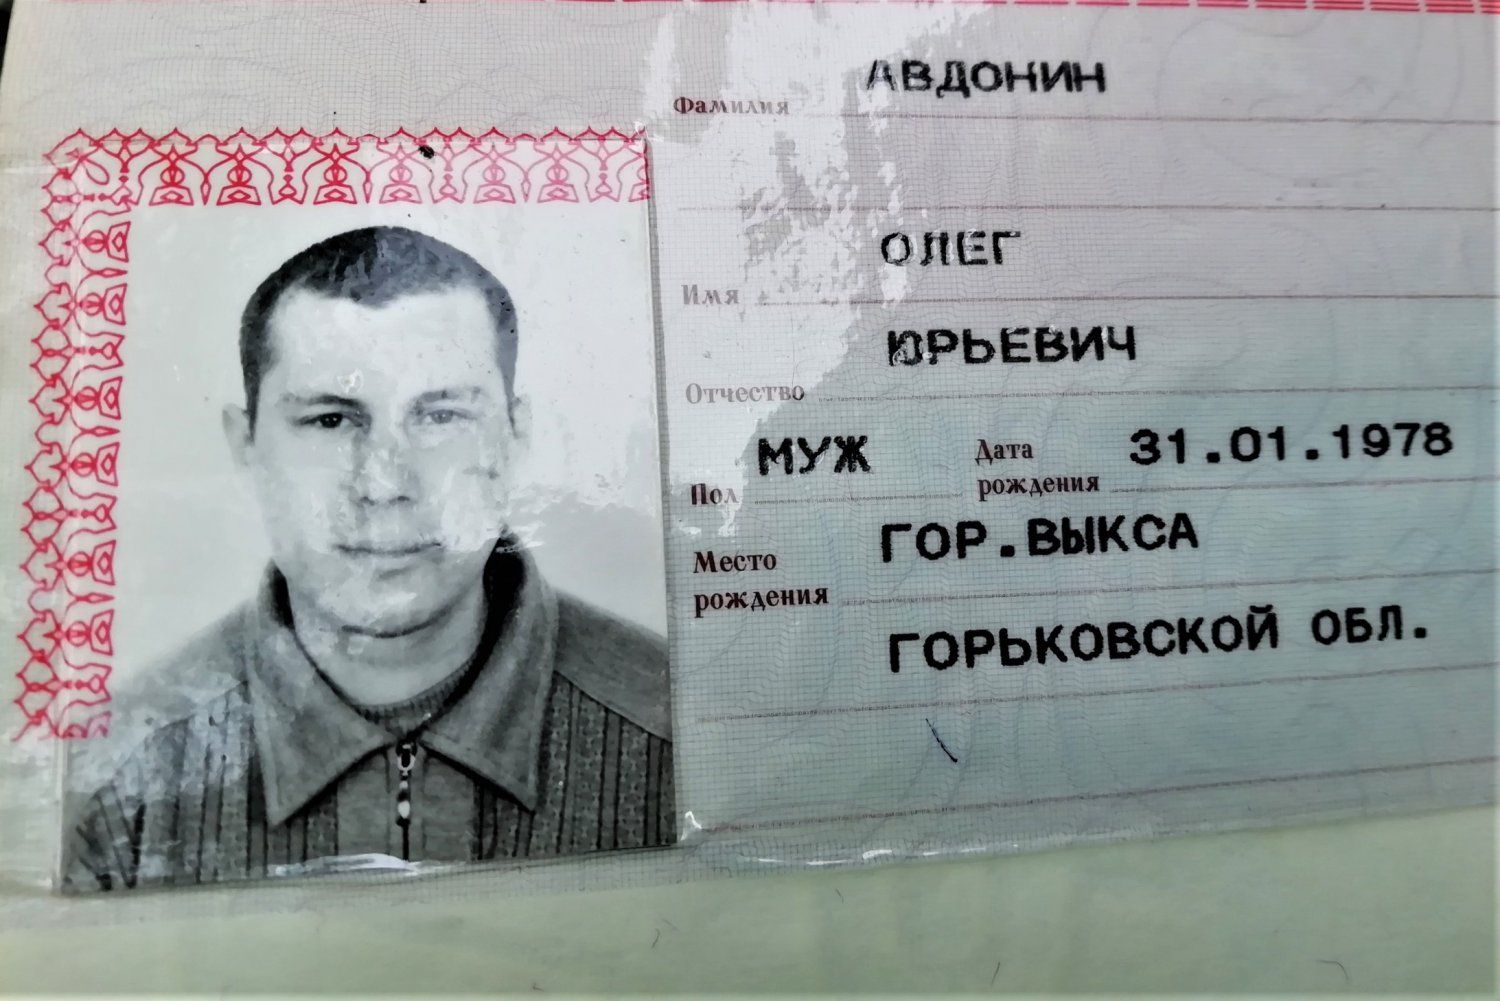 Пропавший Олег Авдонин найден мёртвым